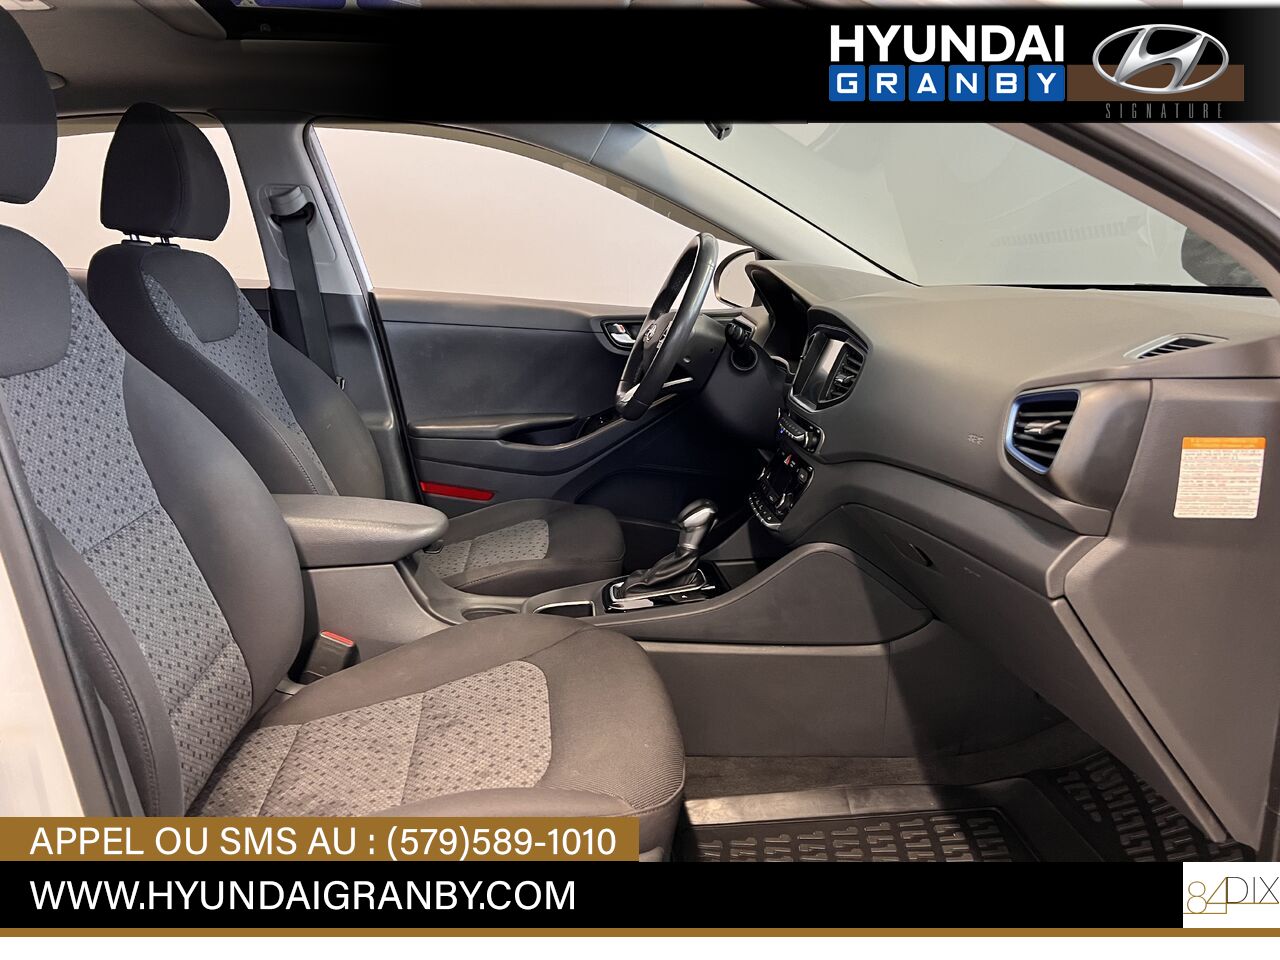 2017 Hyundai Ioniq hybride Granby - photo #25